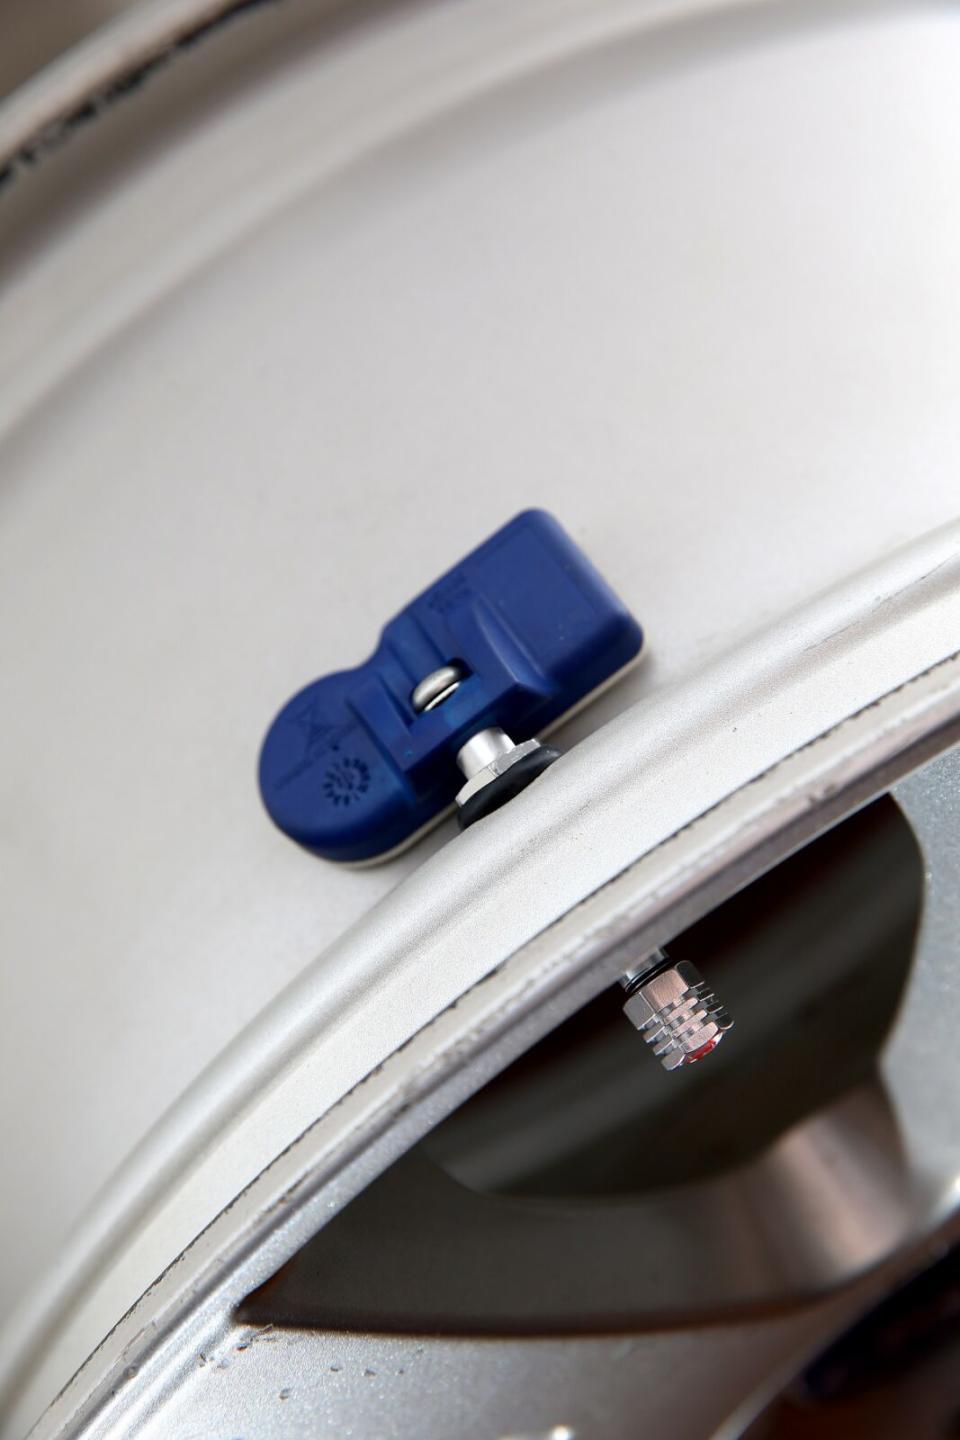 間接式胎壓監測系統有其使用上的盲點，因此許多車廠已陸續為出廠新車換上直接式胎壓監測系統，可以獨立顯示每一輪的胎壓，降低誤判的機會，更清楚了解輪胎狀況。